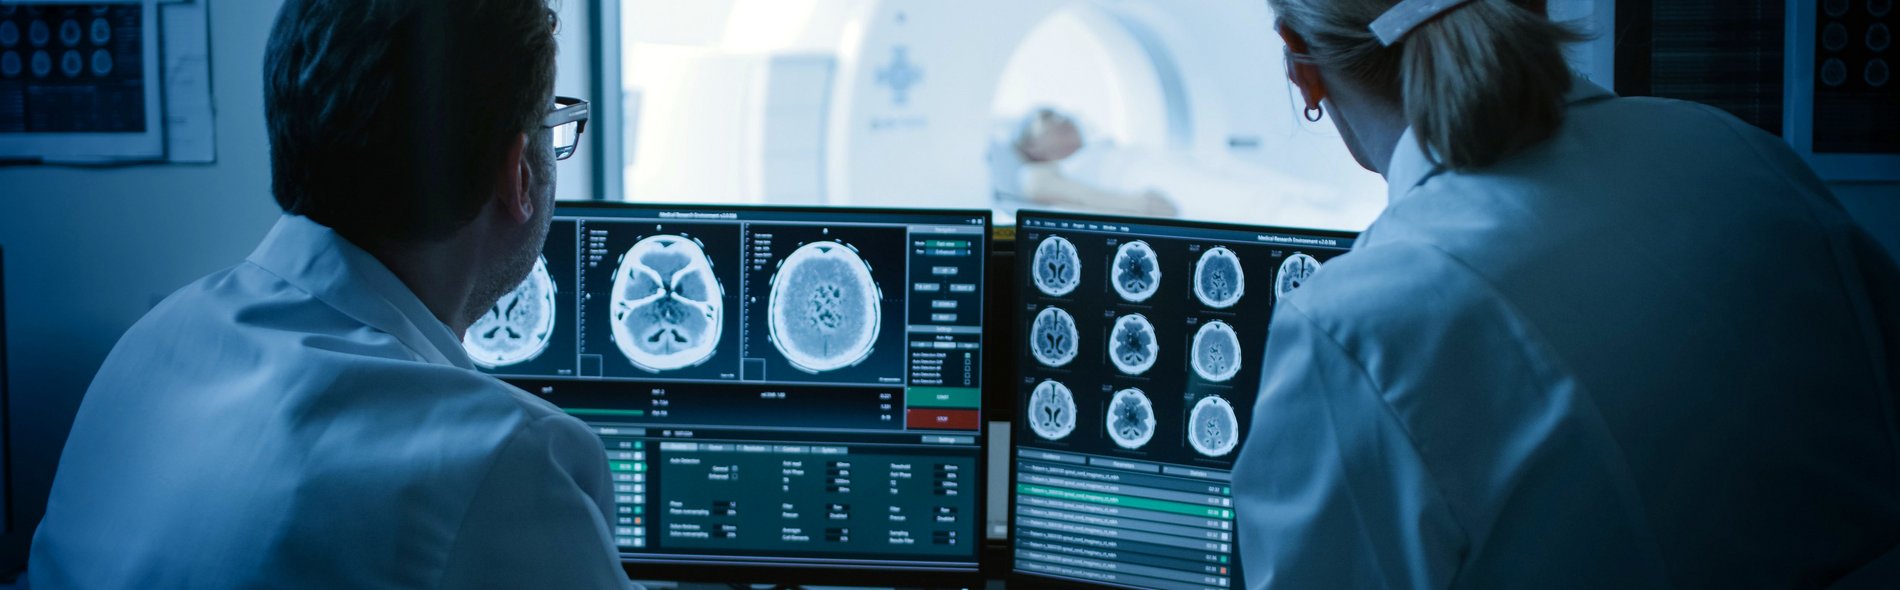 Два врача-невролога изучают снимки мозга на экране. На заднем плане виден пациент на МРТ.